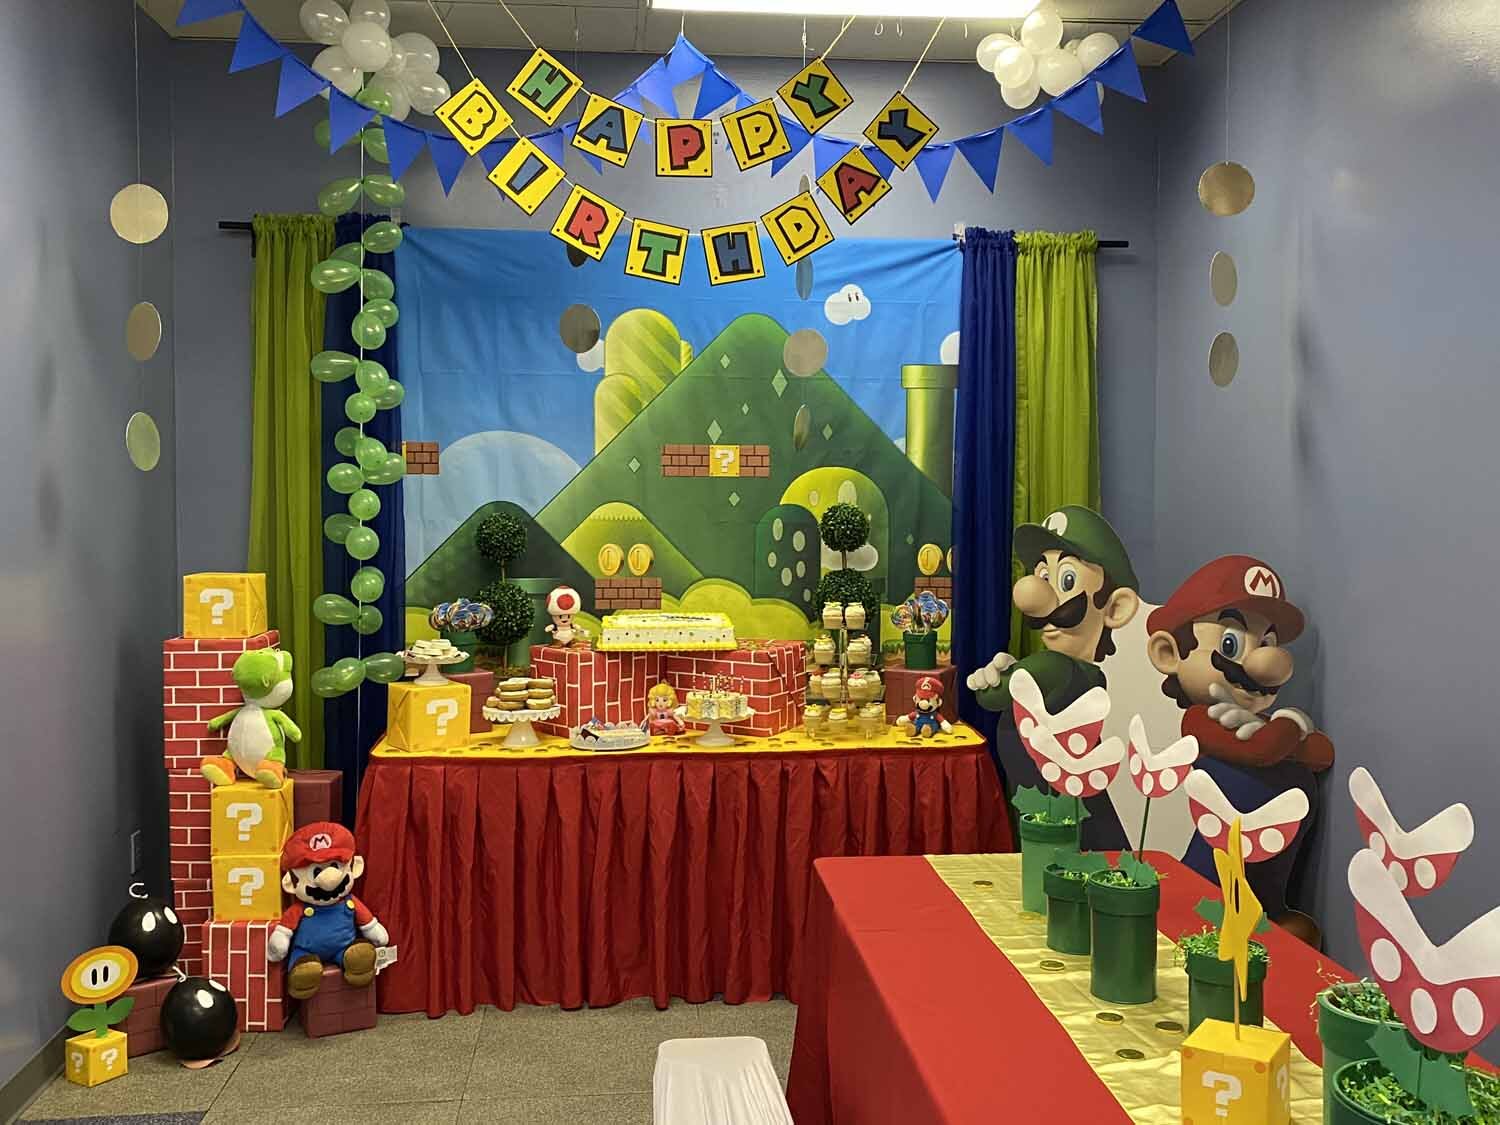 Obligatorio Ejecución muestra Super Mario Brothers Birthday Party Decorations Orlando FL — Princesses &  Princes